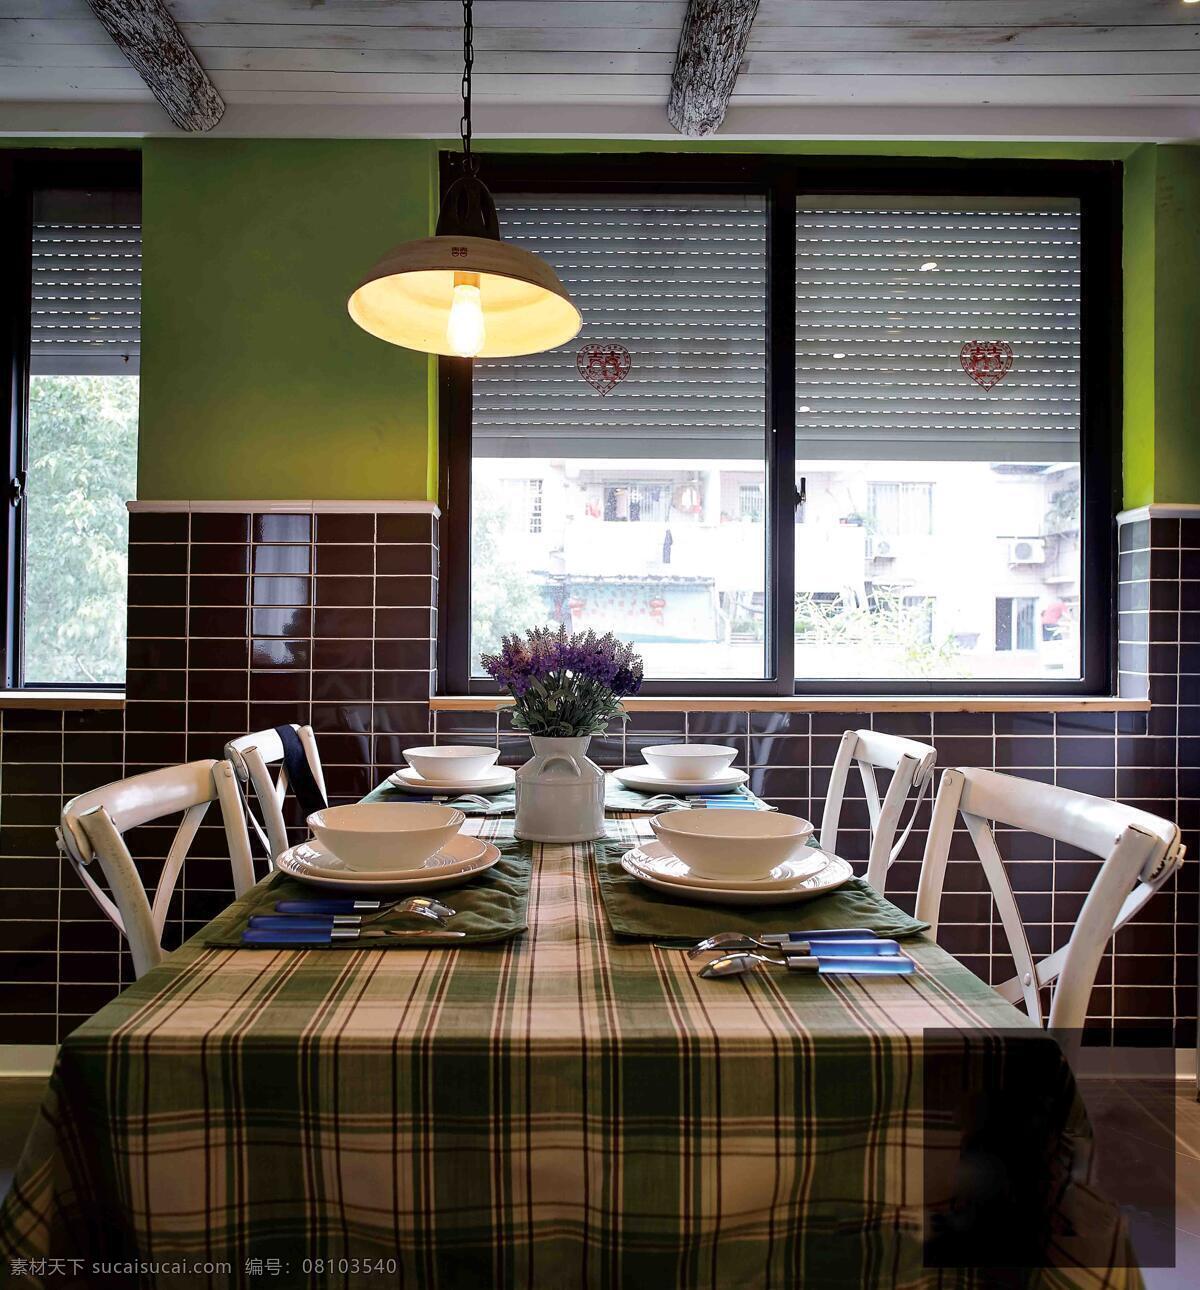 苏格兰 桌布 简约 风 室内设计 餐厅 效果图 现代 餐桌 吊灯 餐桌椅 家装